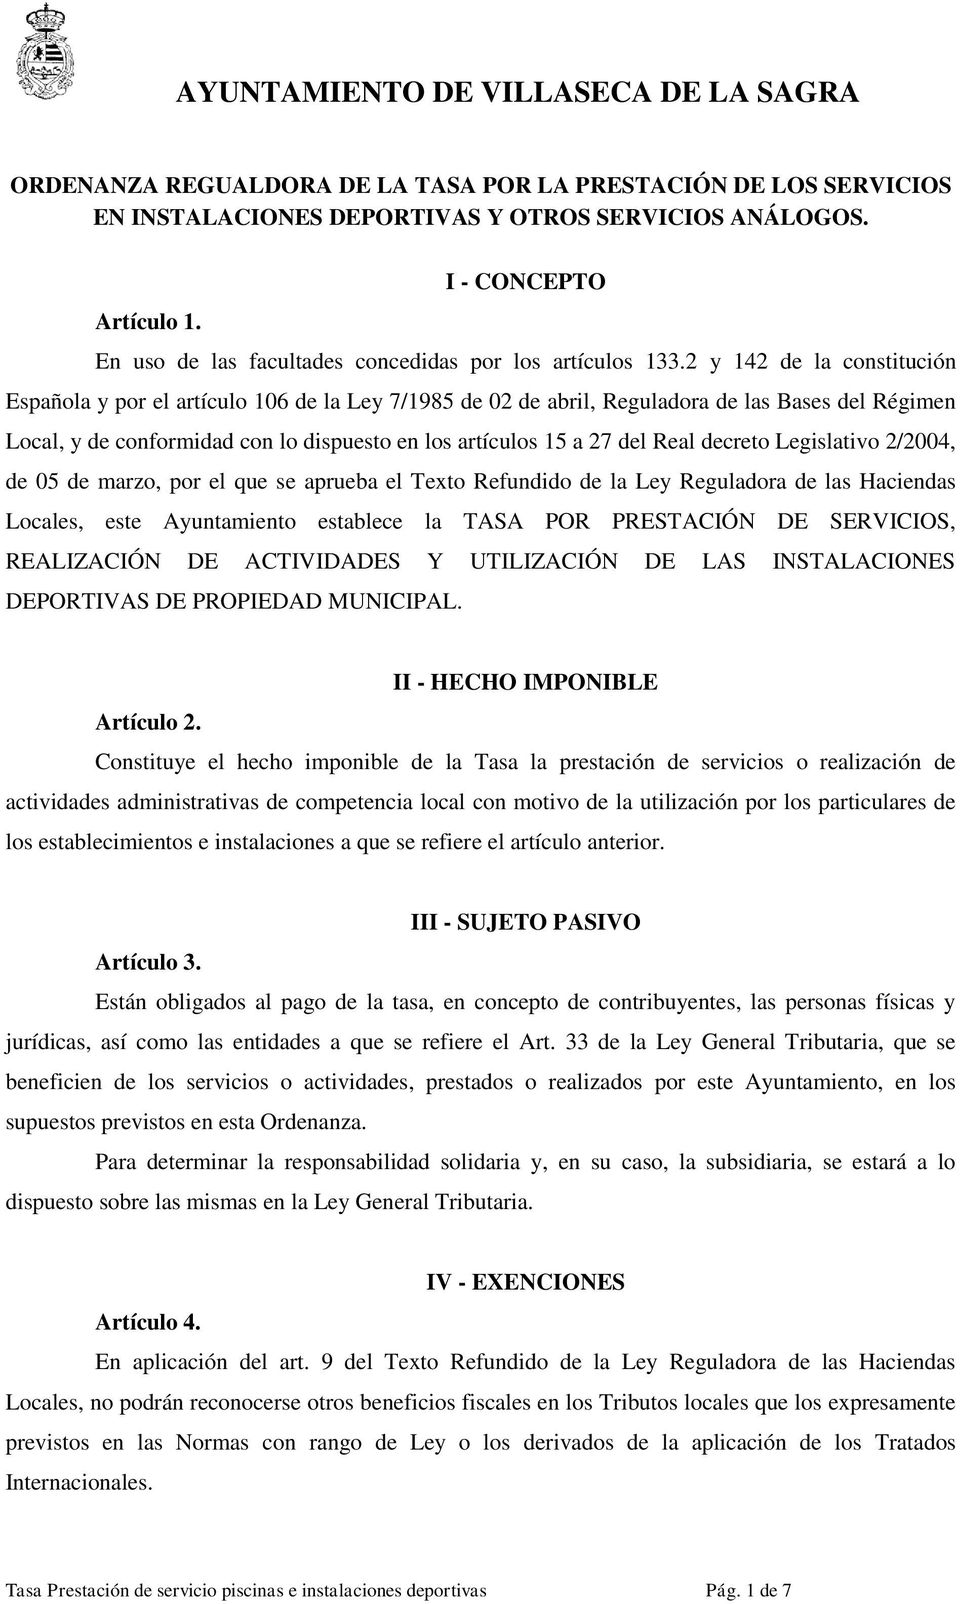 2 y 142 de la constitución Española y por el artículo 106 de la Ley 7/1985 de 02 de abril, Reguladora de las Bases del Régimen Local, y de conformidad con lo dispuesto en los artículos 15 a 27 del